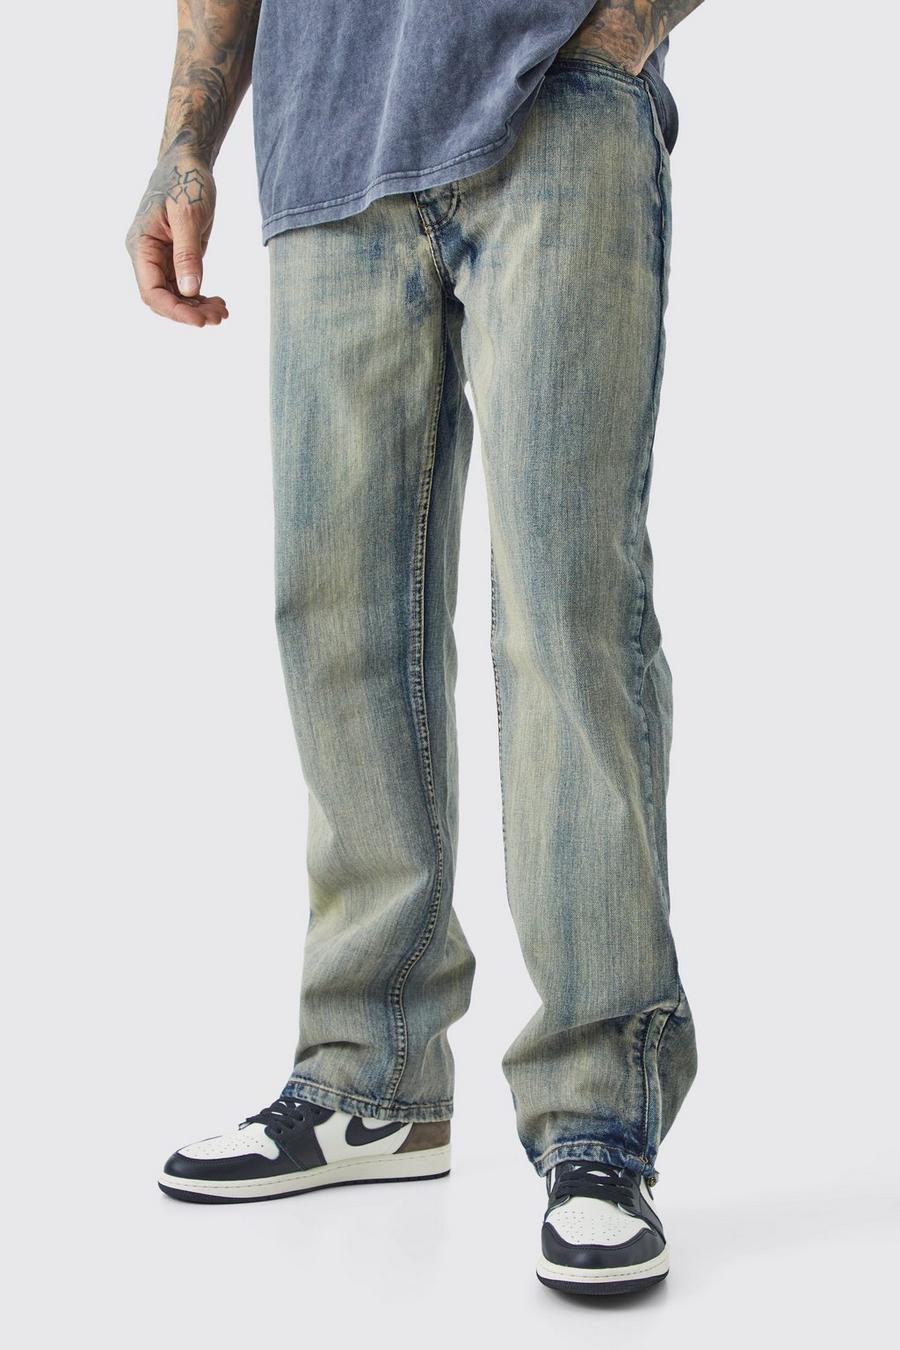 Tall lockere Jeans mit Reißverschluss-Saum, Antique wash